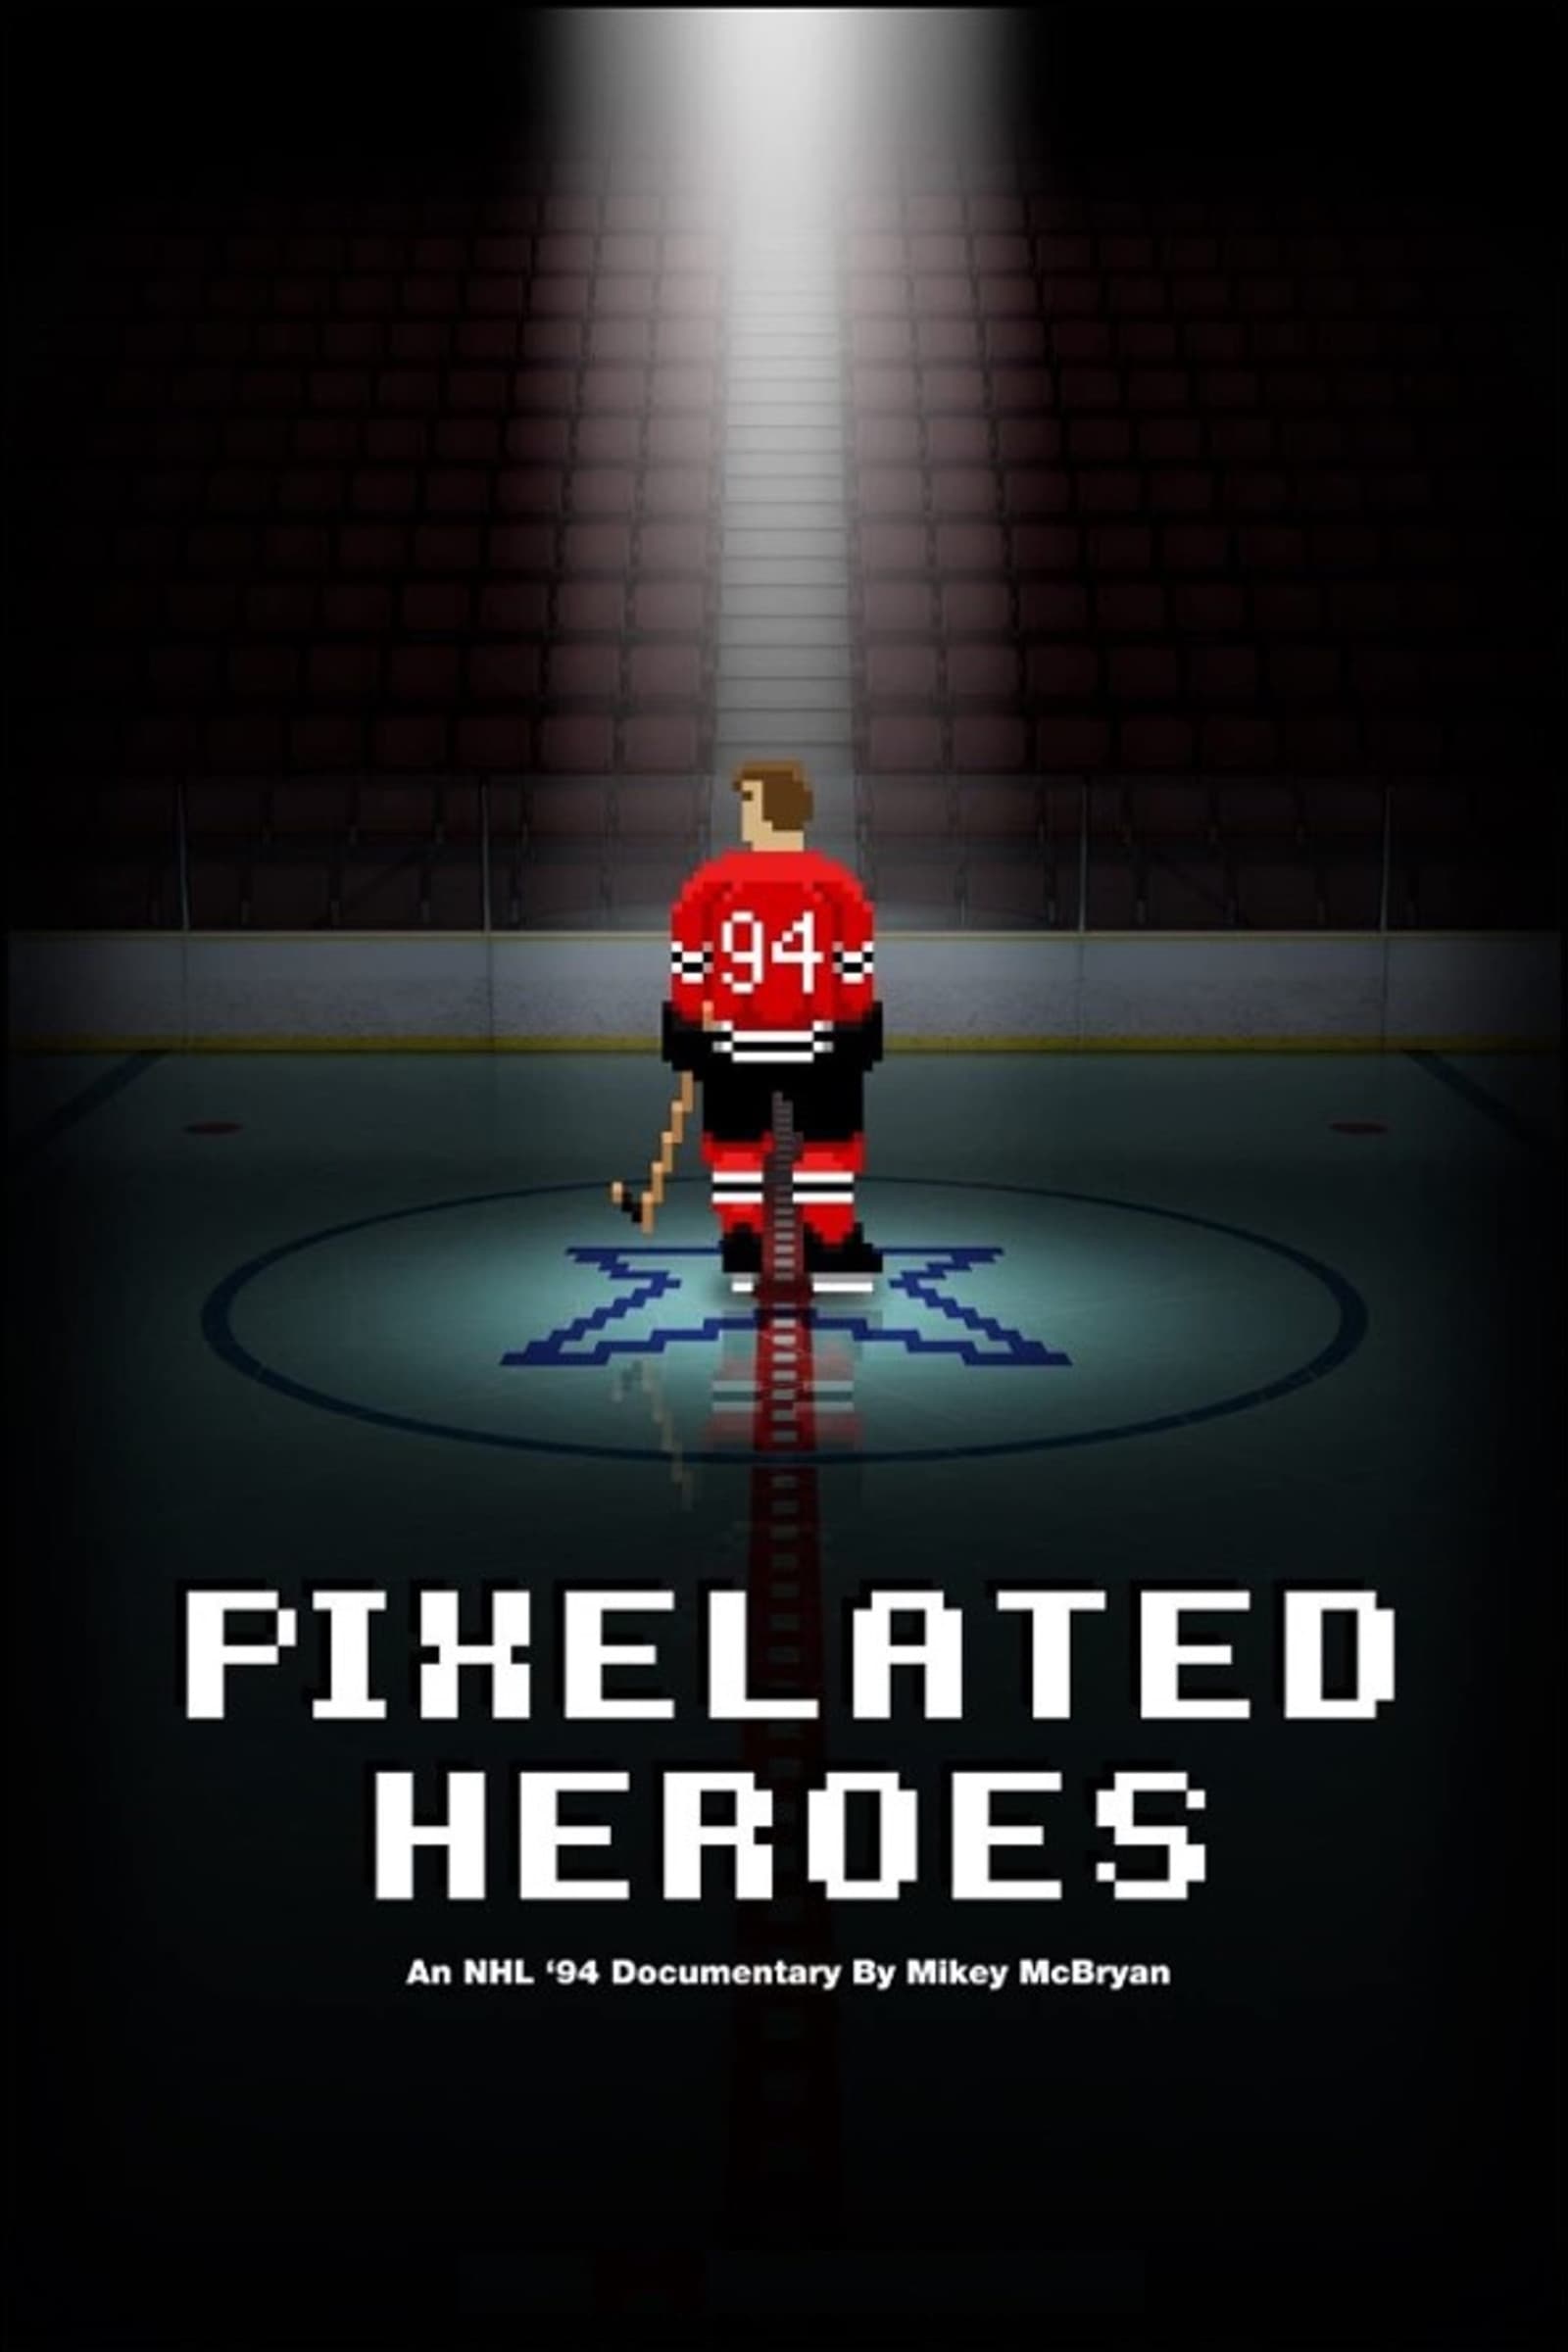 Pixelated Heroes